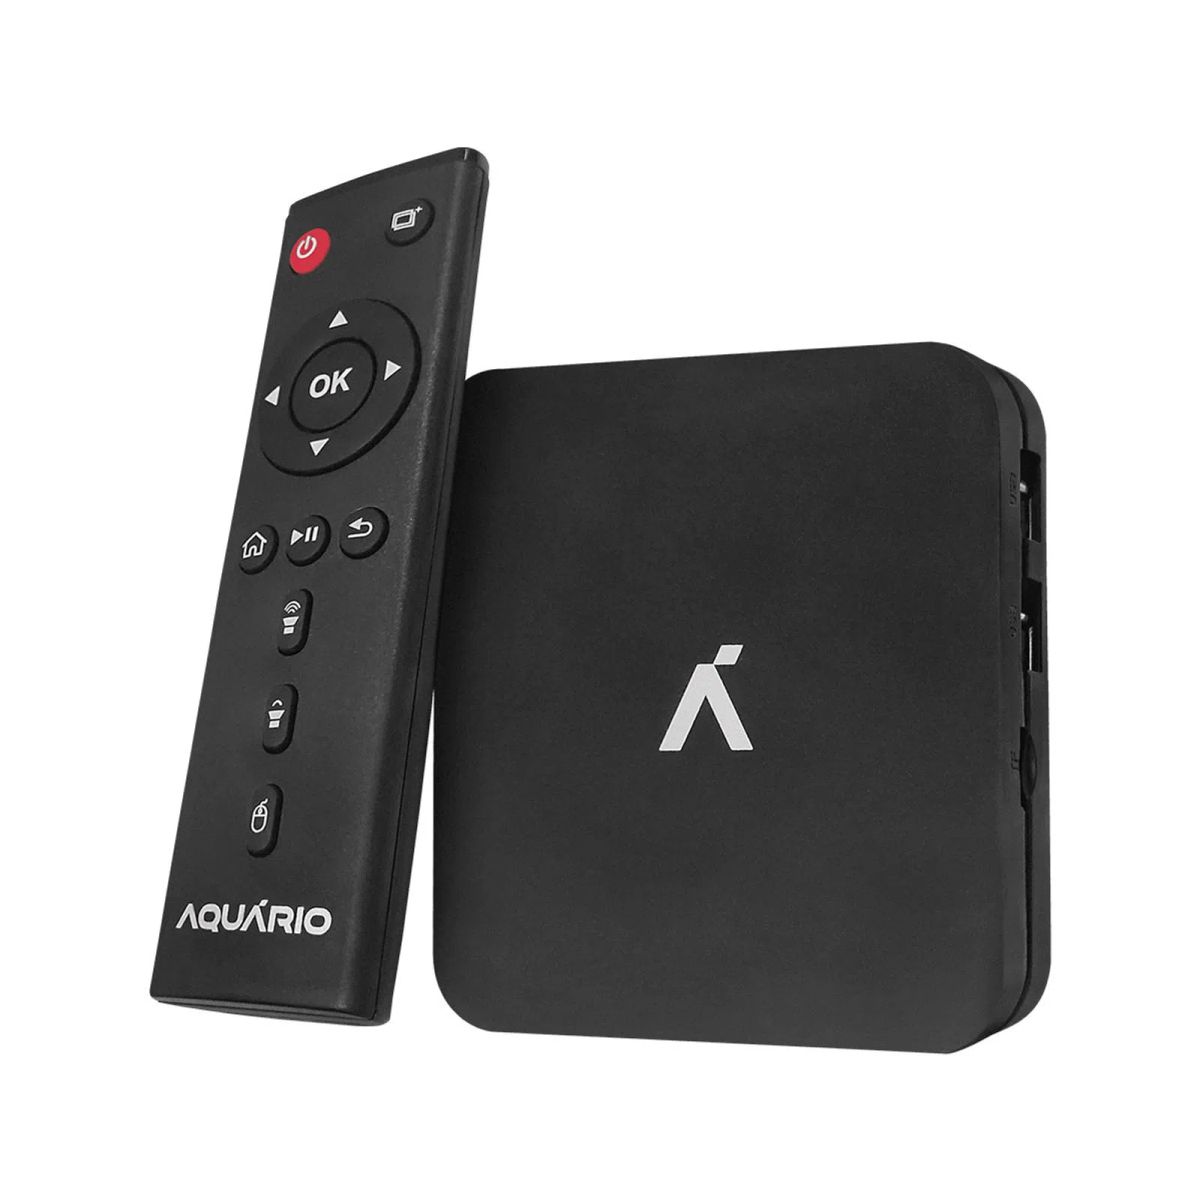 Smart TV Box Aquário 4K Android 7.1.2 STV-3000